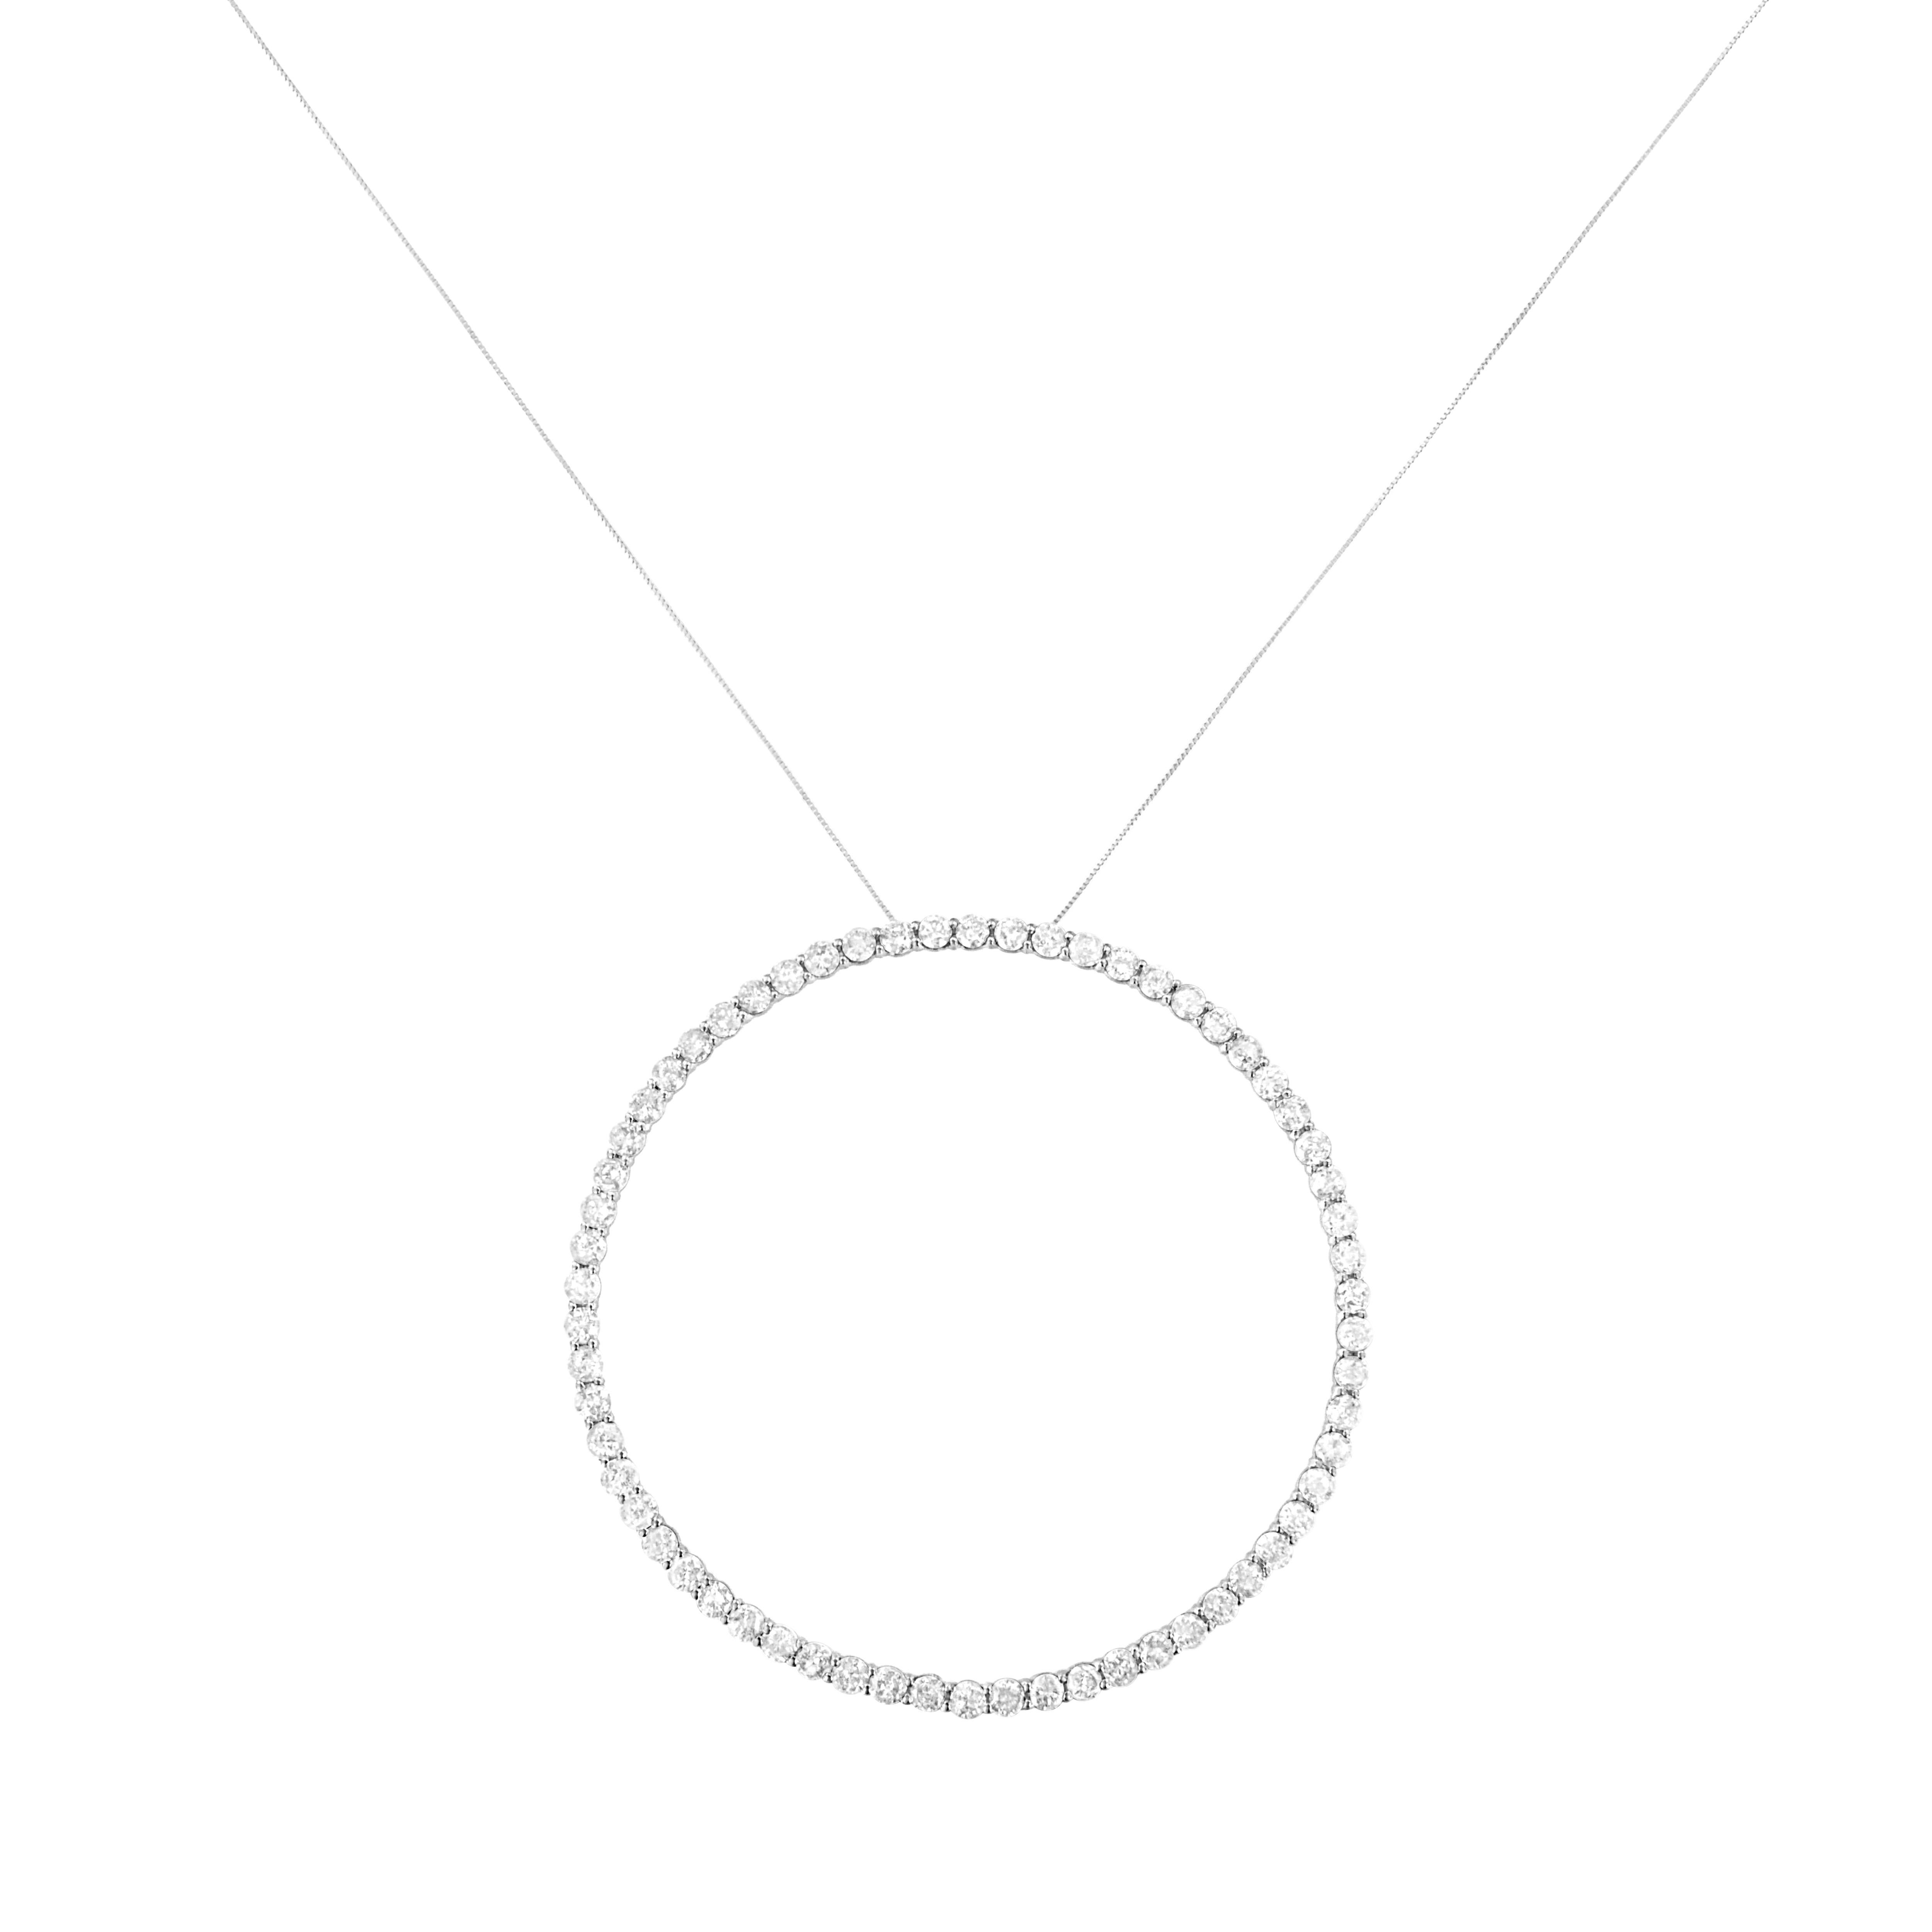 Vous ne pouvez pas vous tromper avec ce collier pendentif circulaire simple et délicat. Réalisé en argent sterling 925, ce pendentif est orné de 5 carats de diamants naturels. 62 diamants ronds scintillants bordent ce pendentif en forme de cercle